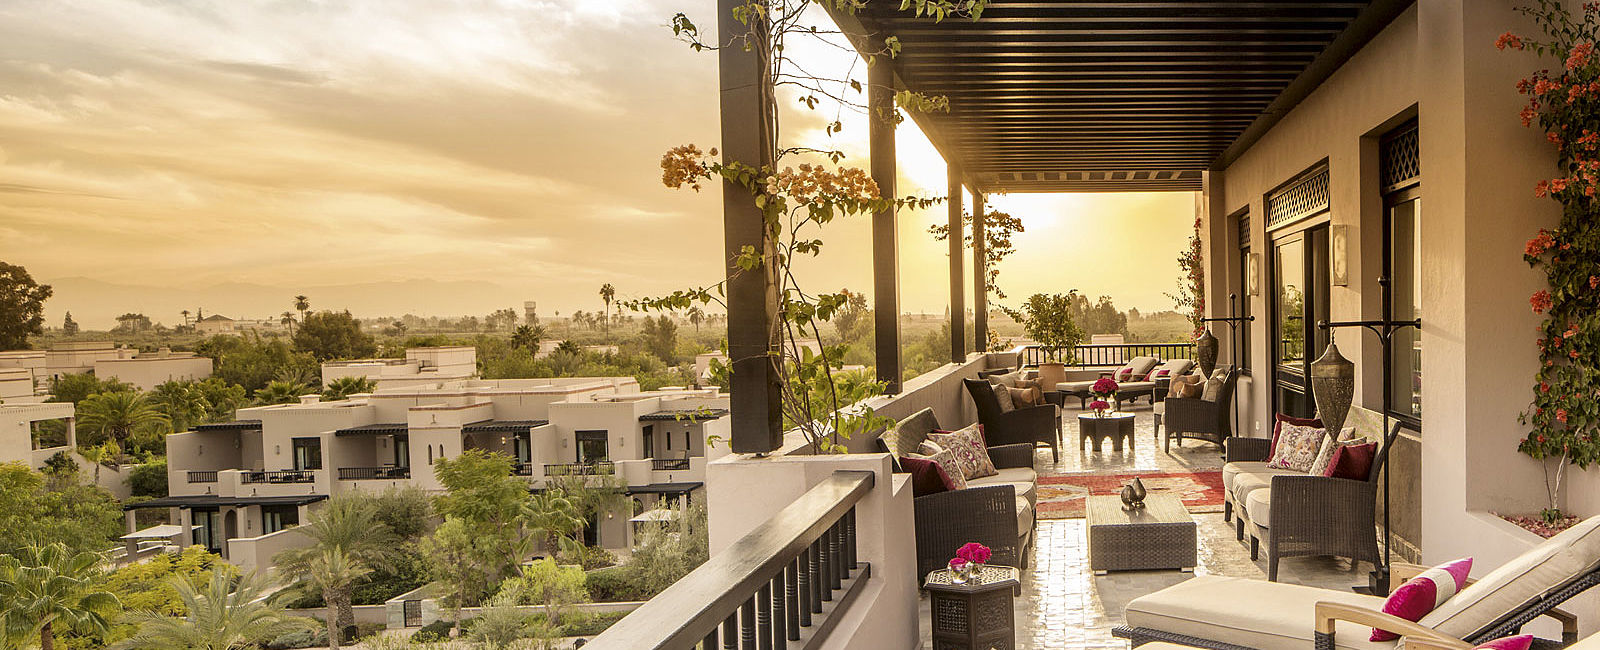 VERY SPECIAL HOTEL
 Four Seasons Resort Marrakech, Marokko 
 Die Luxusoase für alle Sinne 